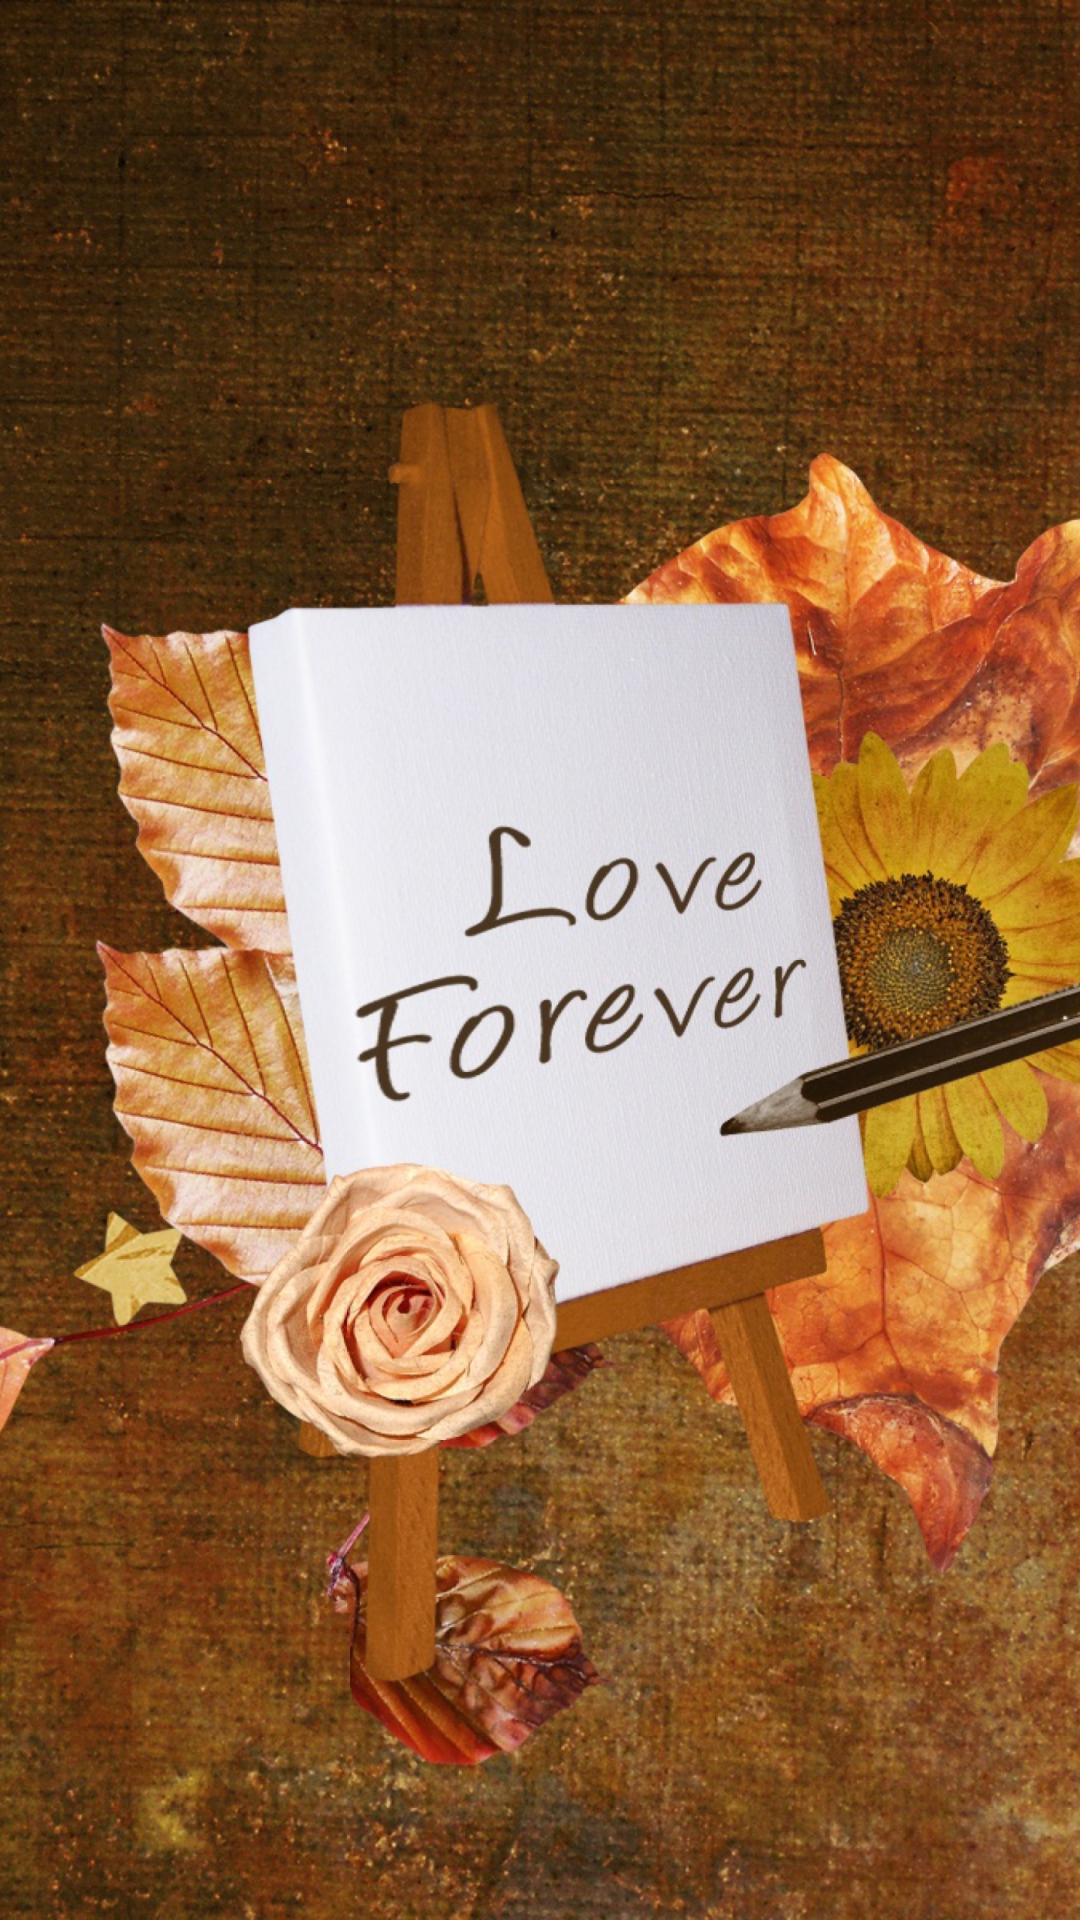 Love Forever wallpaper 1080x1920